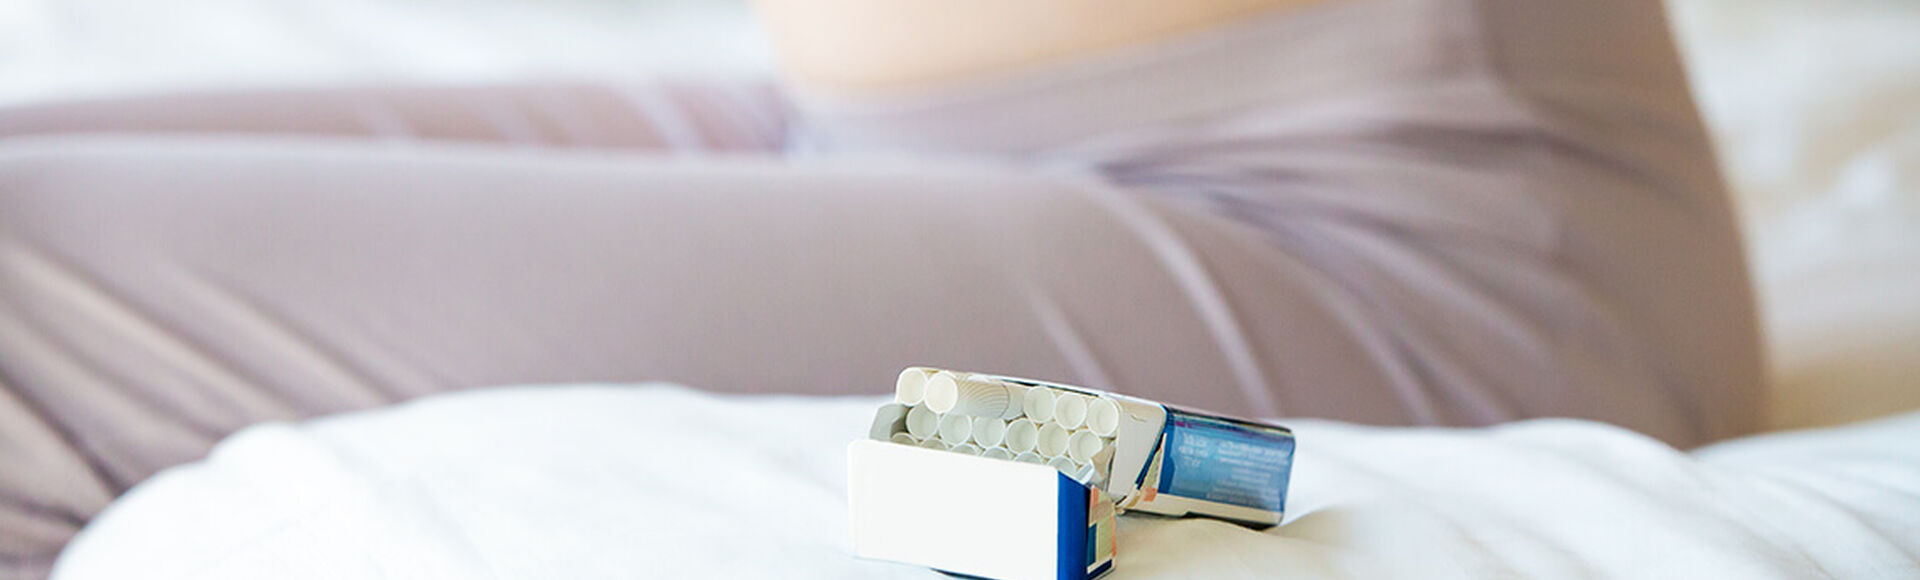 ¿Fumar durante el embarazo? Razones para no hacerlo | by Huggies Argentina